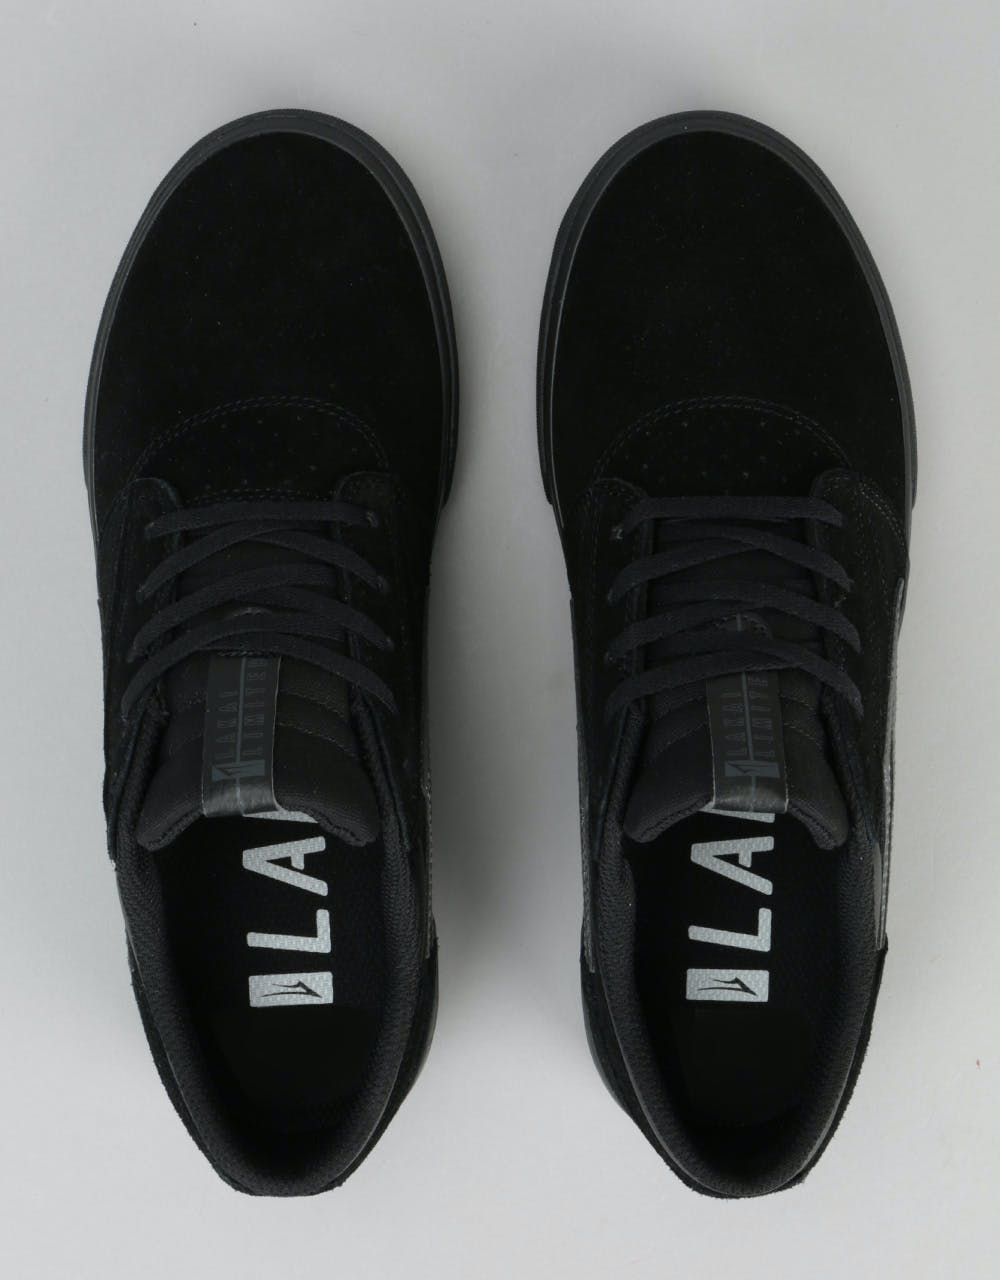 Lakai Griffin Skate Shoes - Black/Black Suede